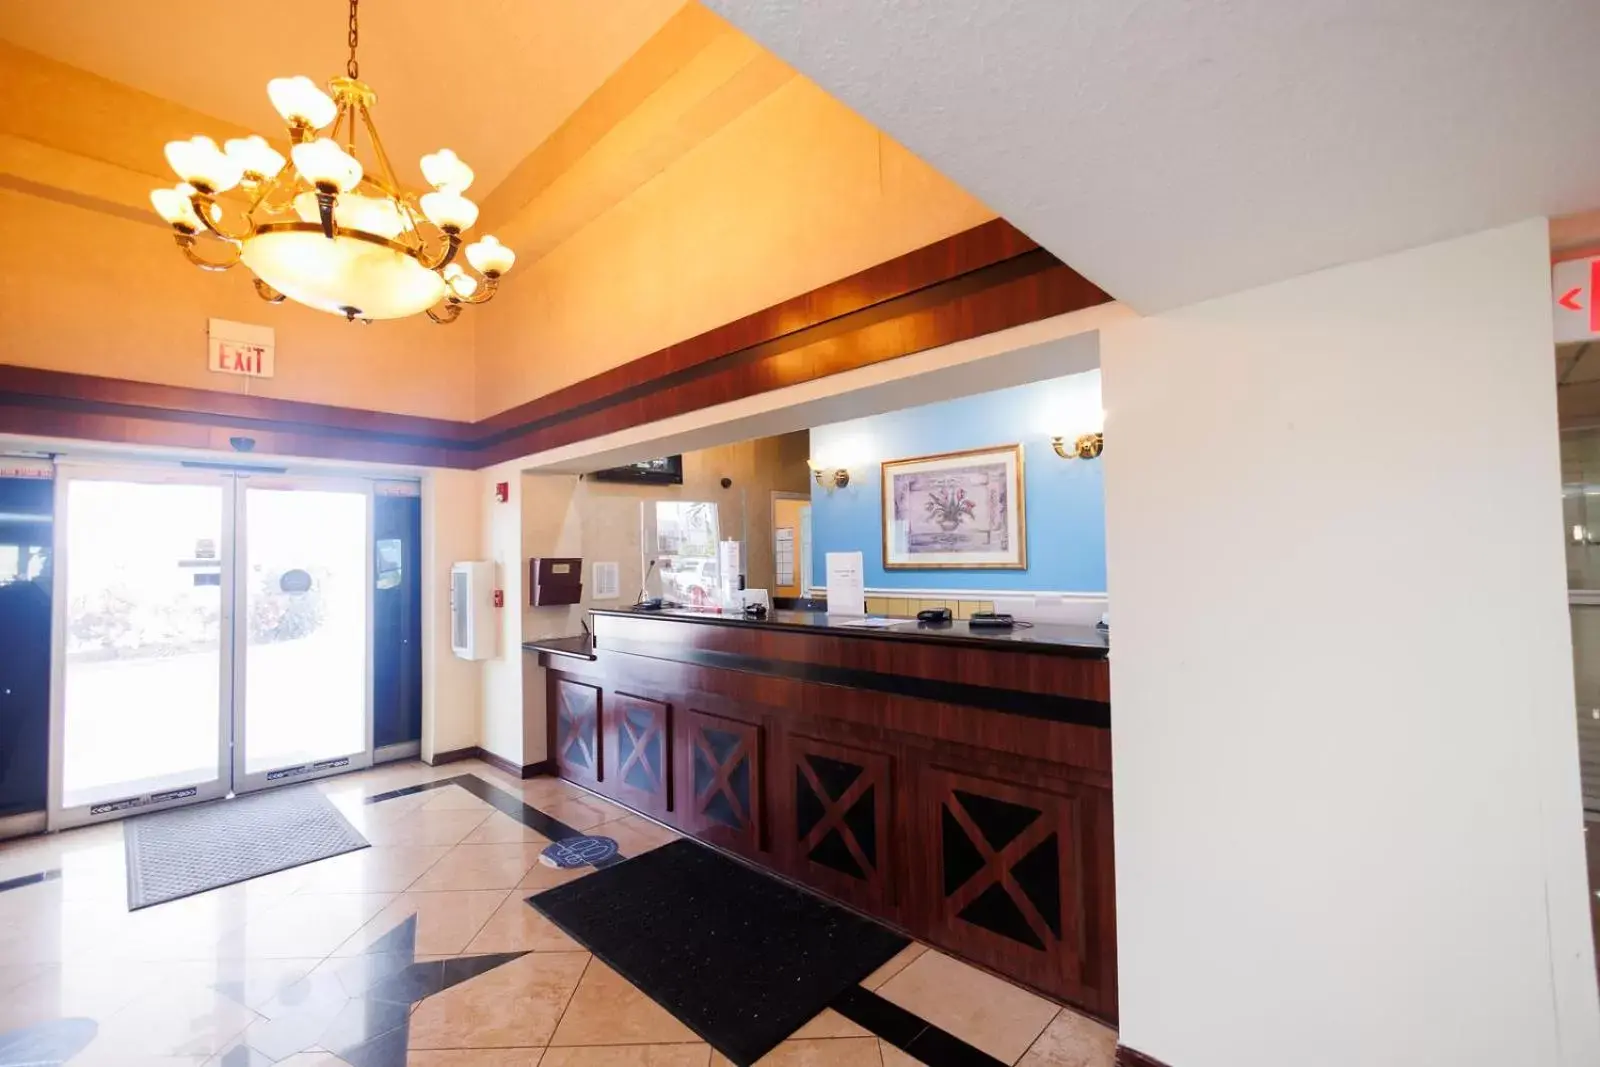 Lobby or reception, Lobby/Reception in Garnet Inn & Suites, Orlando